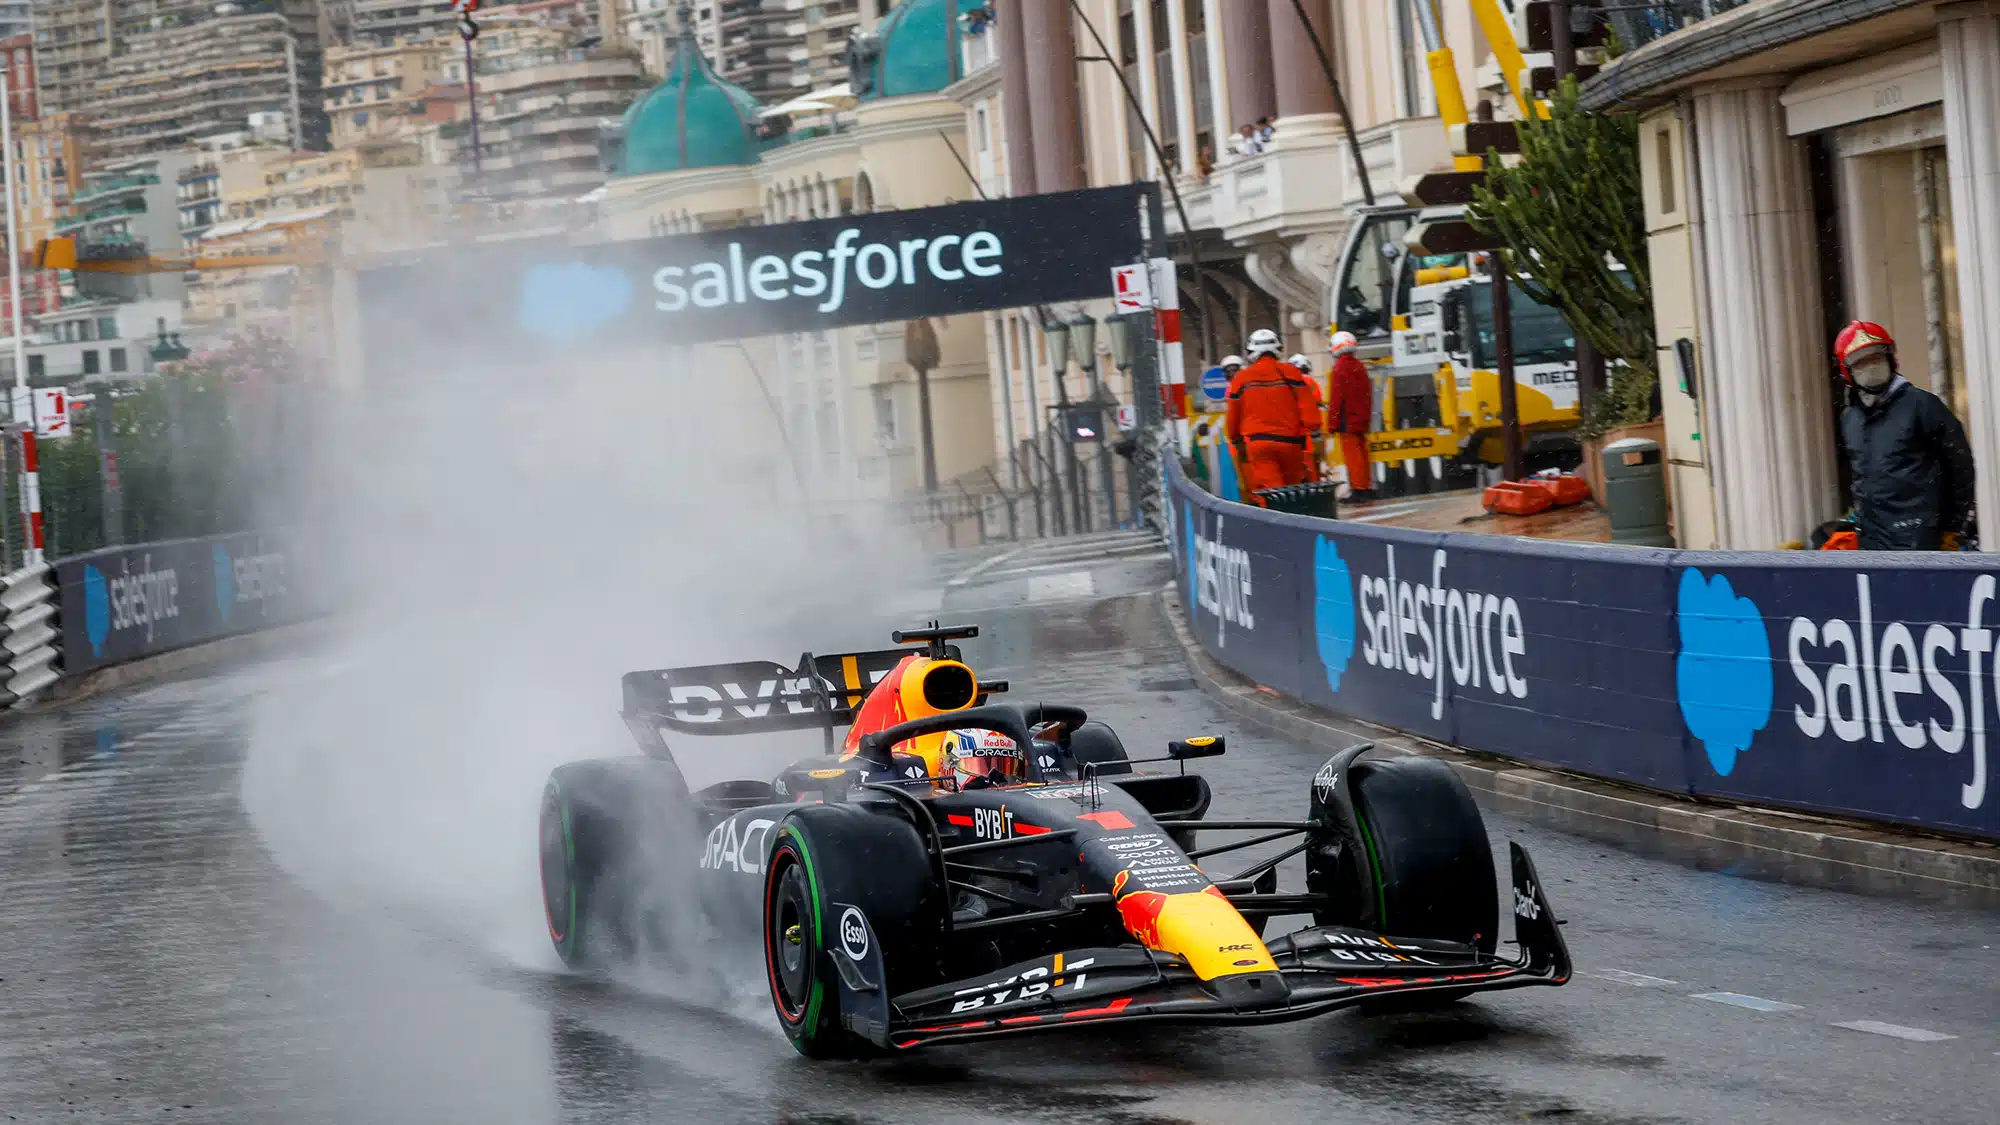 Preview do GP de Mônaco – Uma pista desafiadora que realmente cobra os competidores